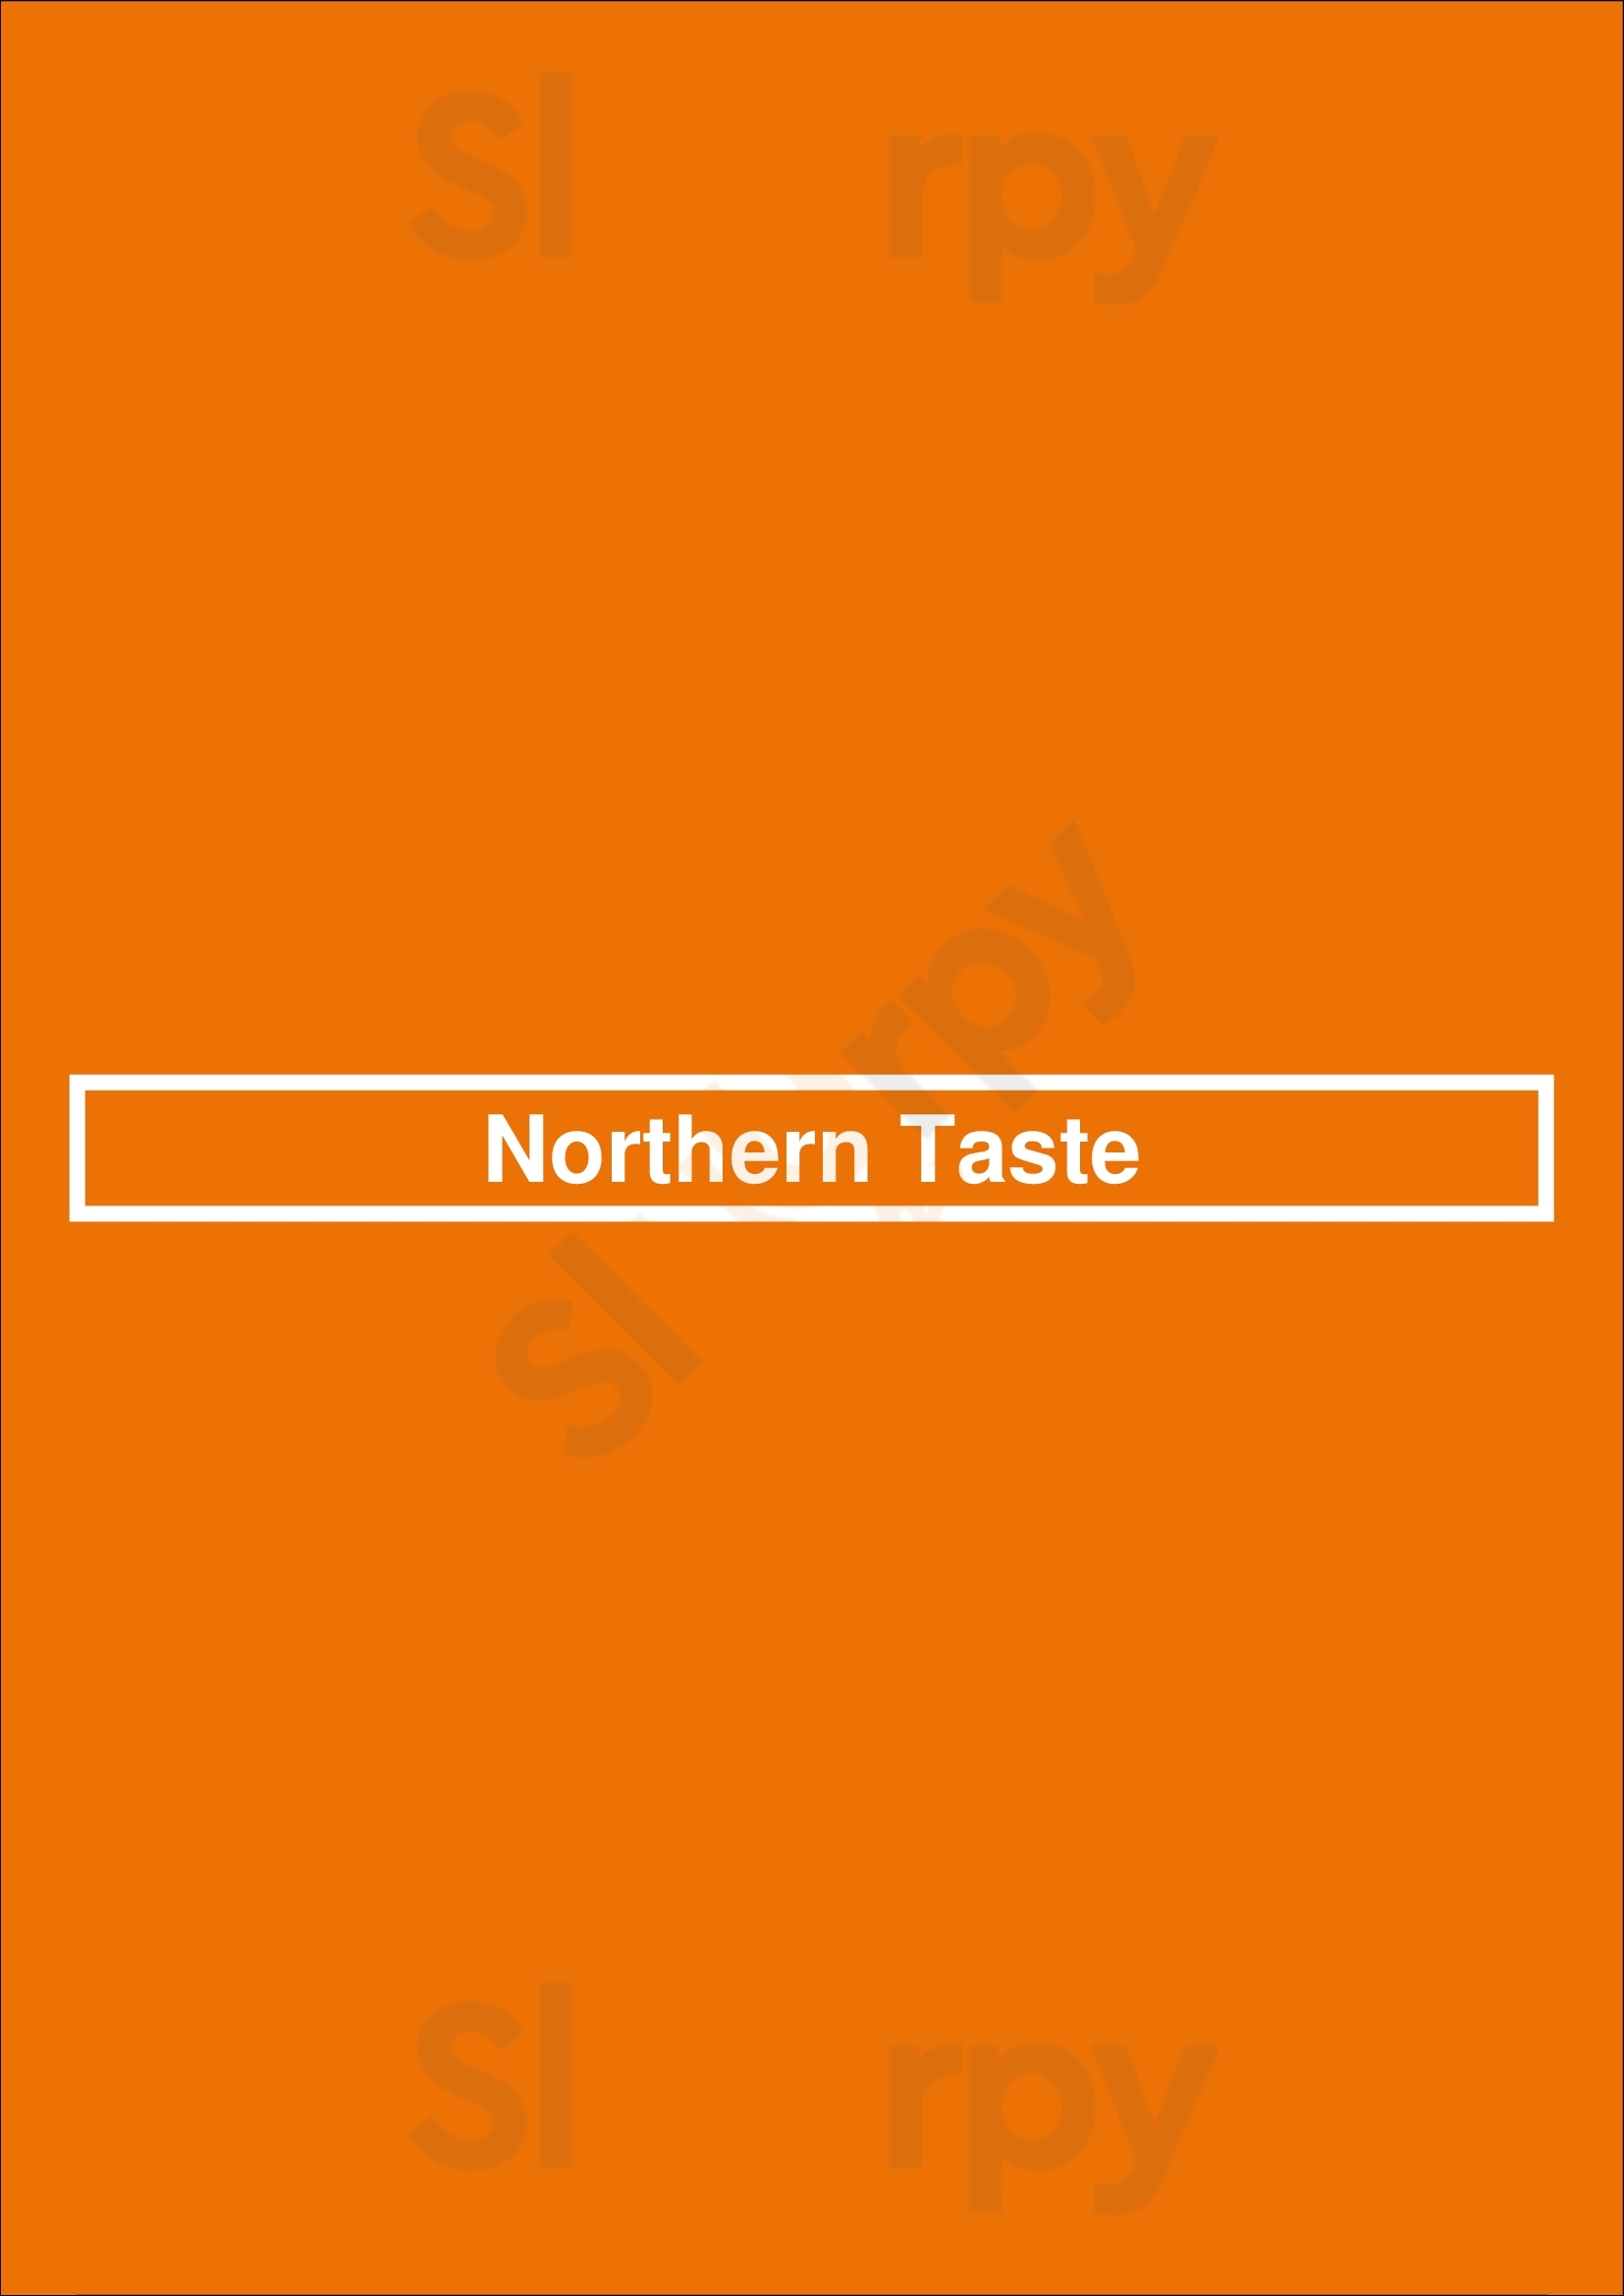 Northern Taste Chicago Menu - 1